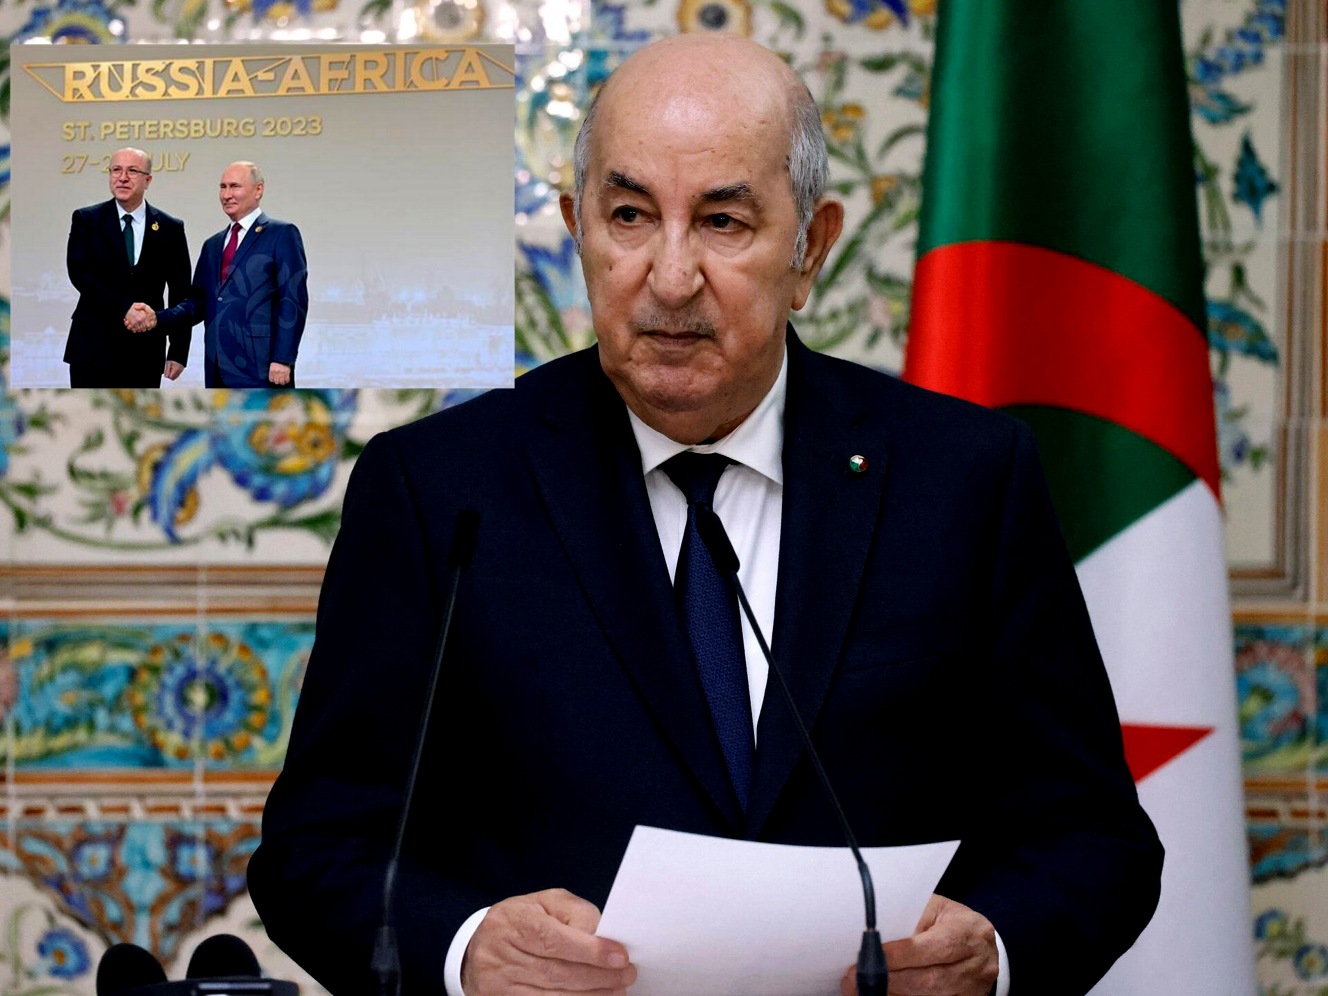 Sommet Russie-Afrique:  Le Président Tebboune appelle  à un partenariat mutuellement bénéfique - Algérie